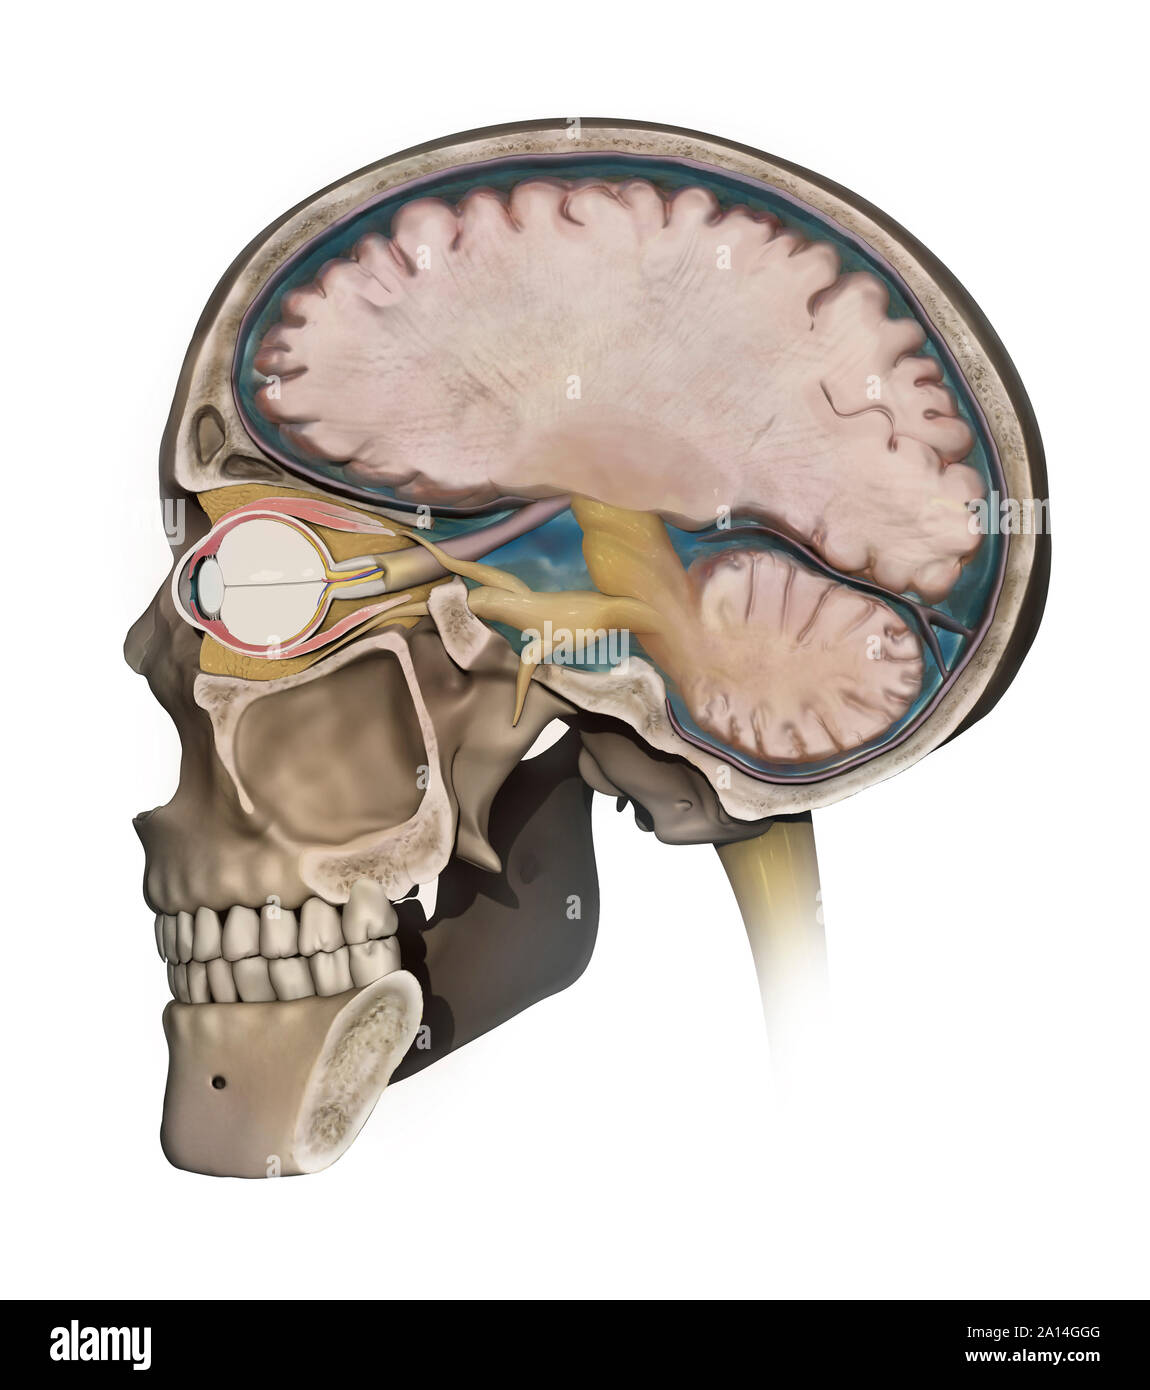 Medizinische Abbildung: Darstellung der Anatomie eines Sagittalschnitt des menschlichen Schädels. Stockfoto